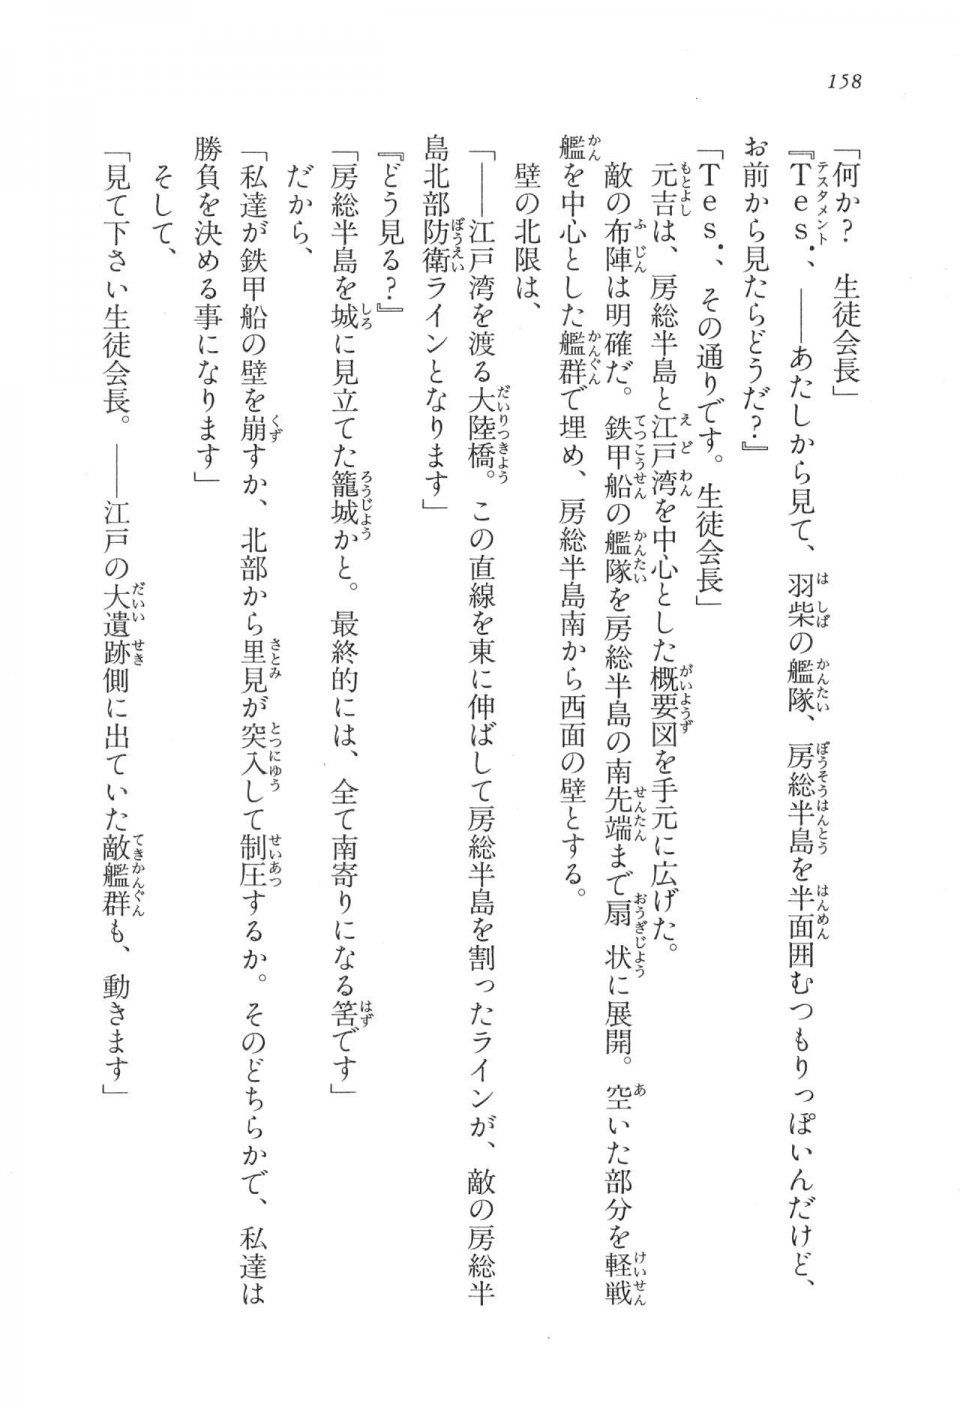 Kyoukai Senjou no Horizon LN Vol 17(7B) - Photo #158